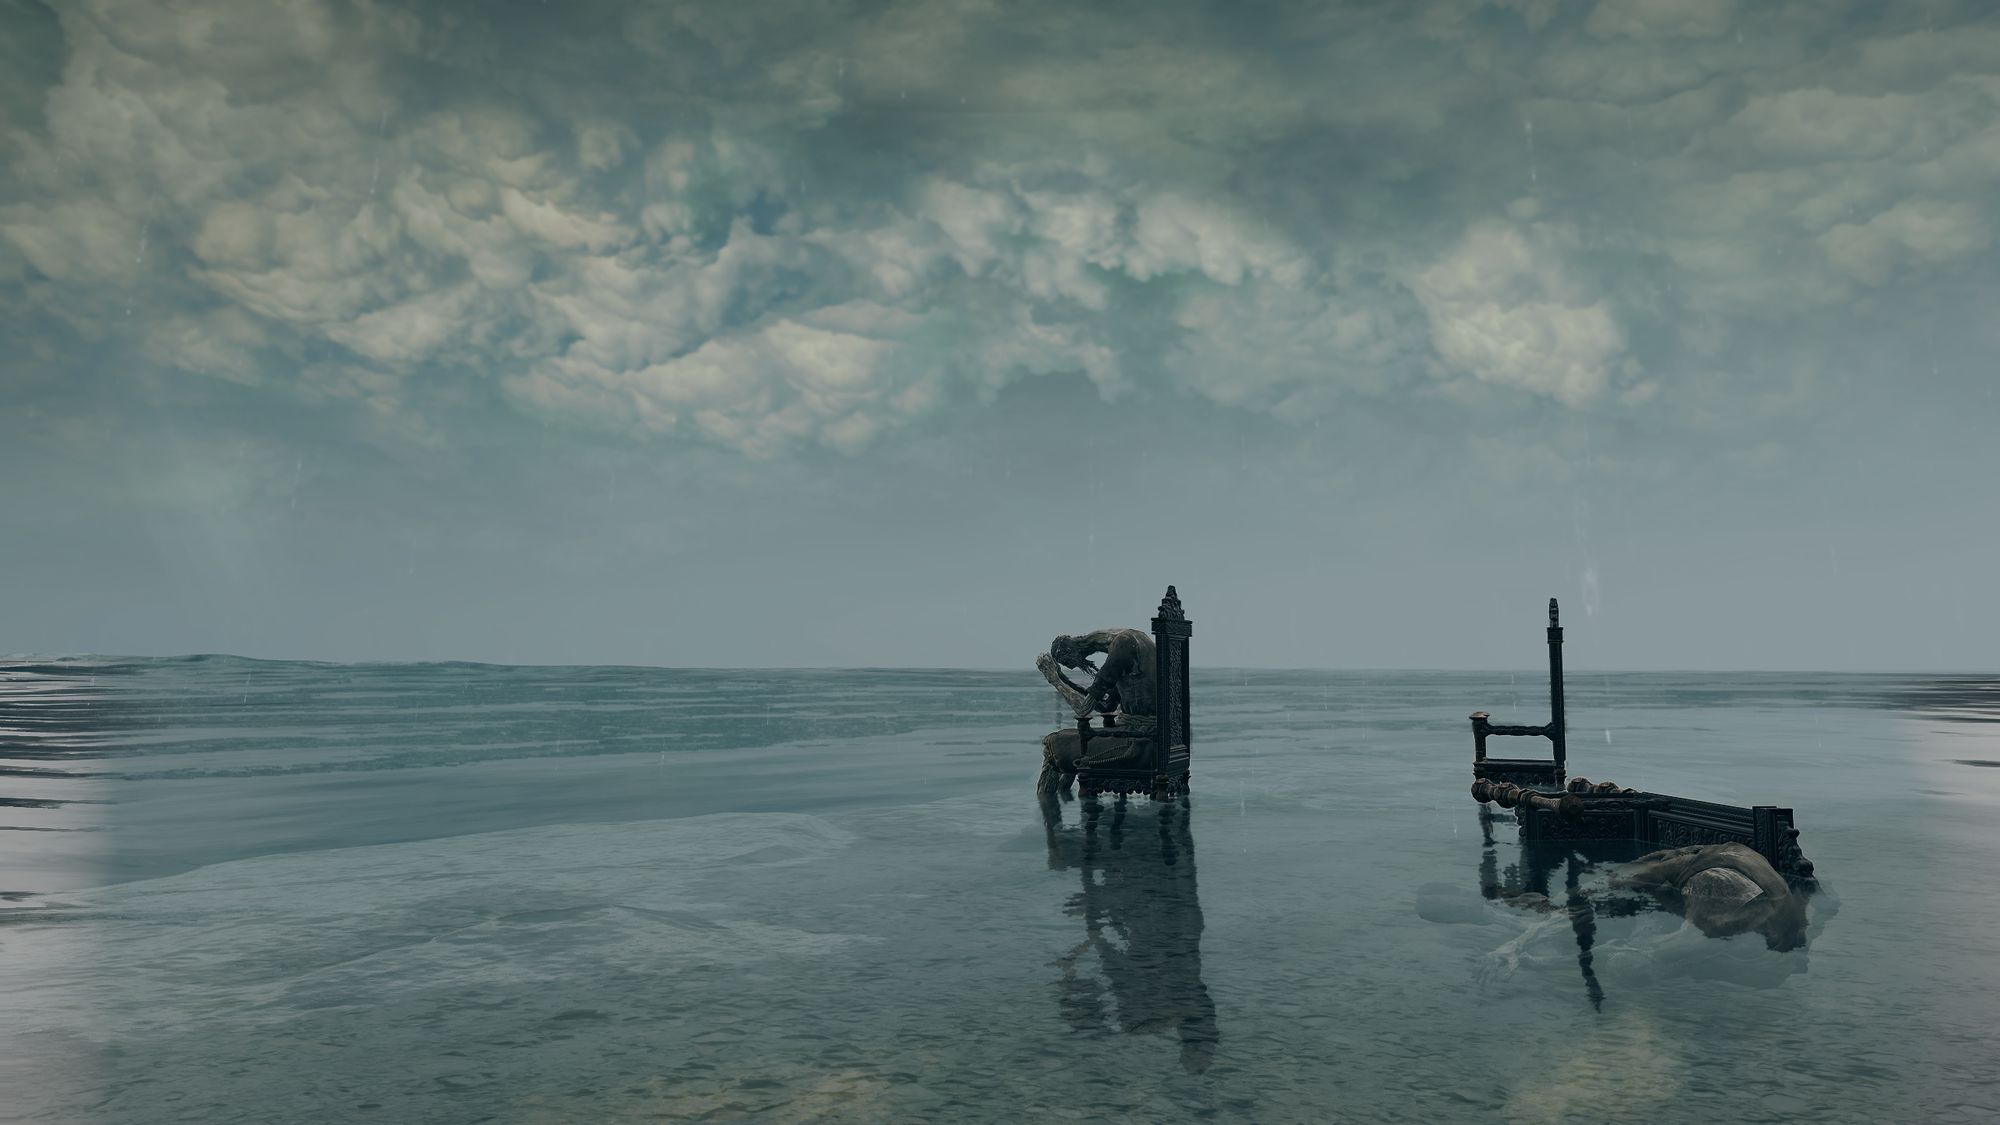 Скриншот из компьютерной игры, существо сидит на стуле в окружении воды